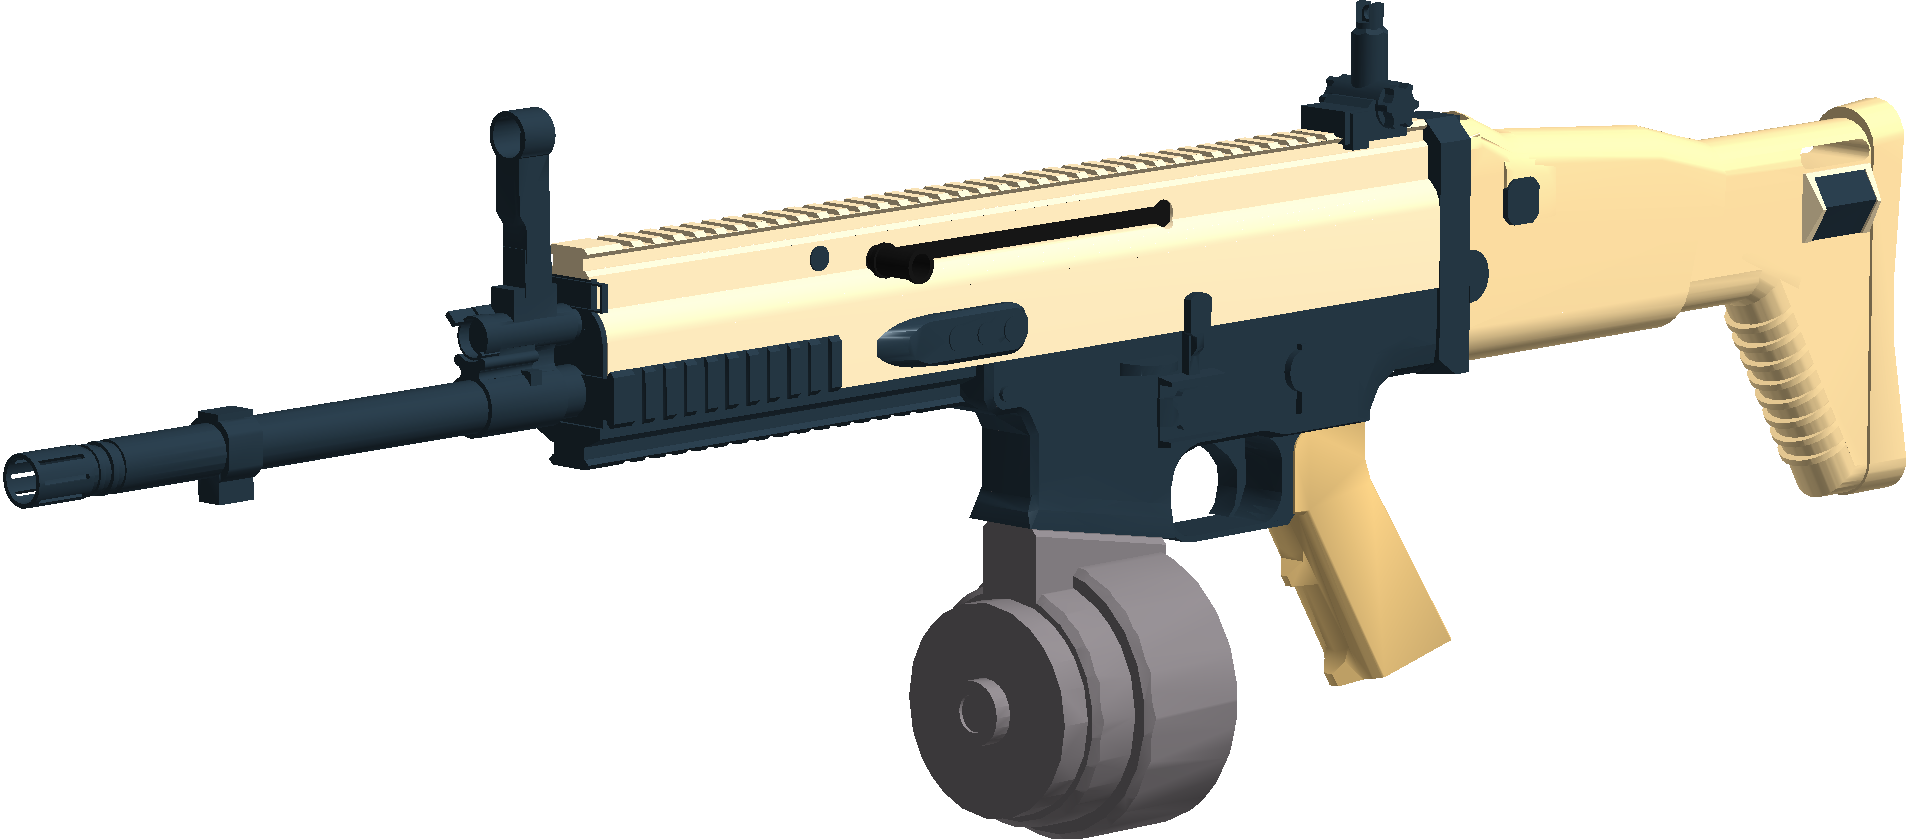 Scar Hamr Phantom Forces Wiki Fandom - roblox scar gun